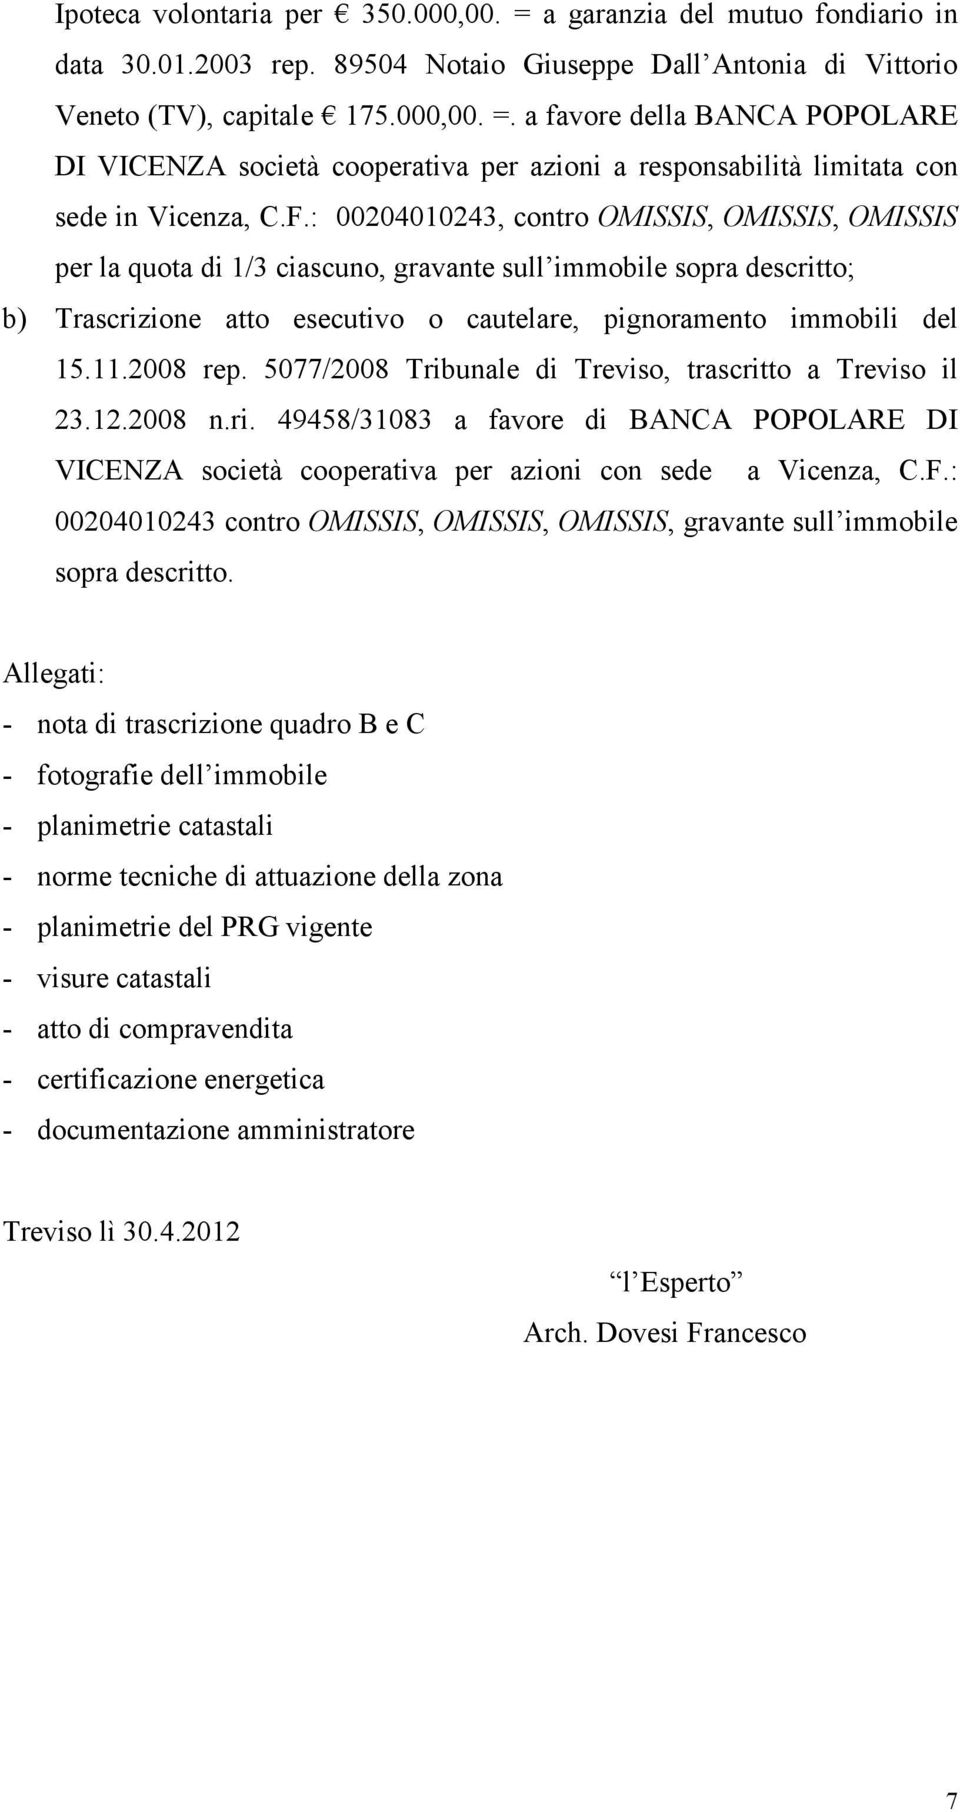 2008 rep. 5077/2008 Tribunale di Treviso, trascritto a Treviso il 23.12.2008 n.ri. 49458/31083 a favore di BANCA POPOLARE DI VICENZA società cooperativa per azioni con sede a Vicenza, C.F.